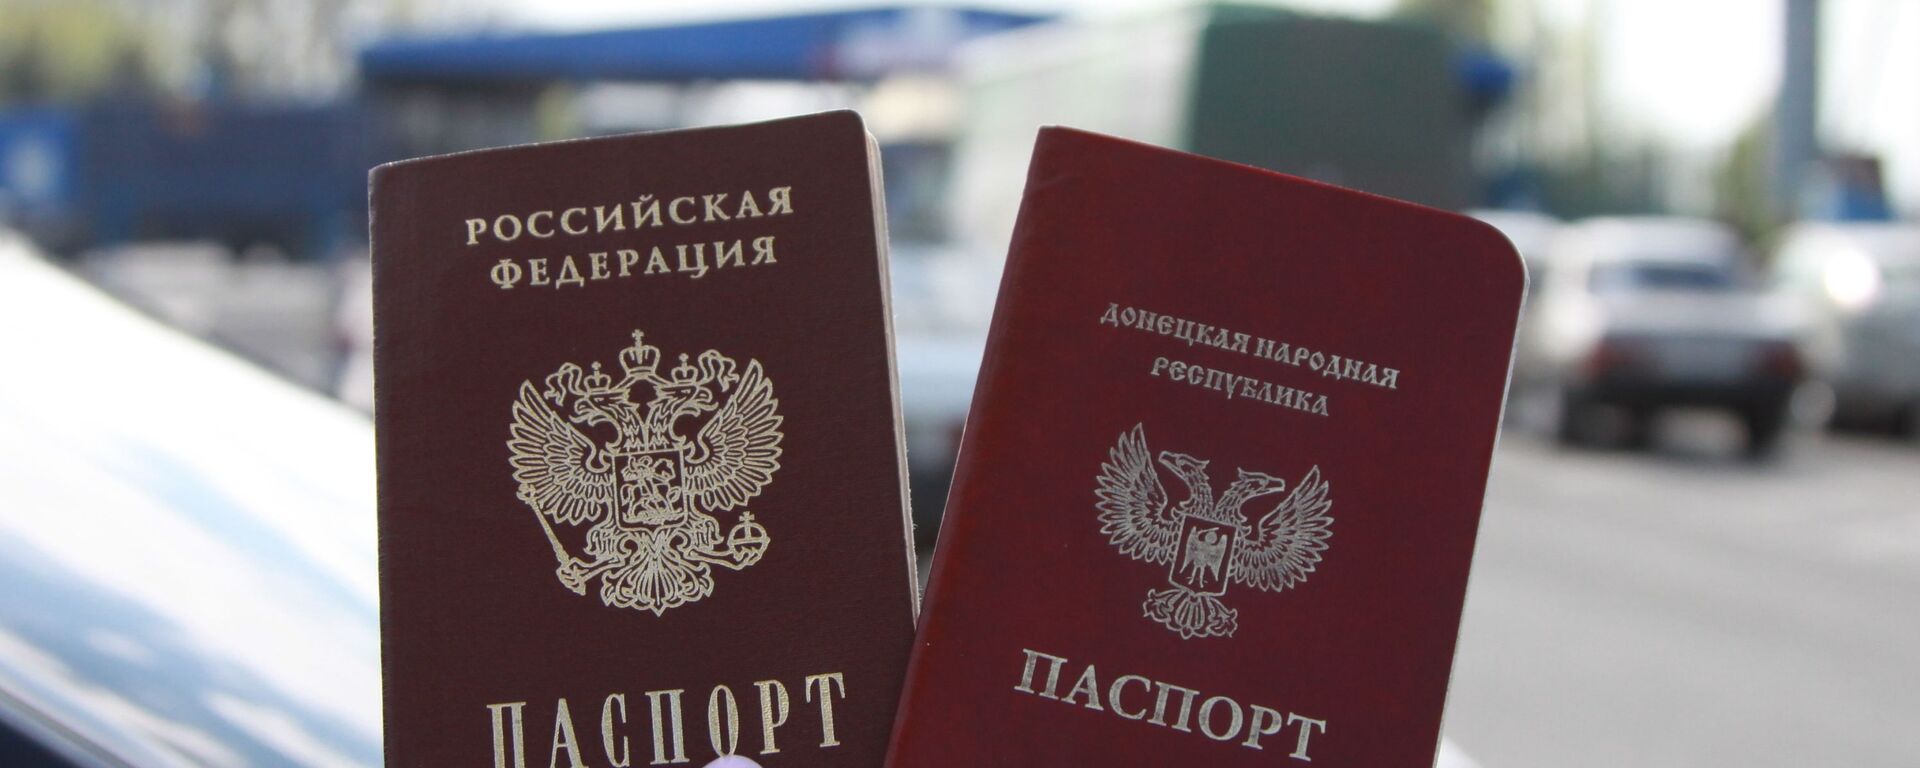 Граждане ЛНР и ДНР смогут получить паспорта РФ по упрощенной процедуре - Sputnik Абхазия, 1920, 25.07.2022